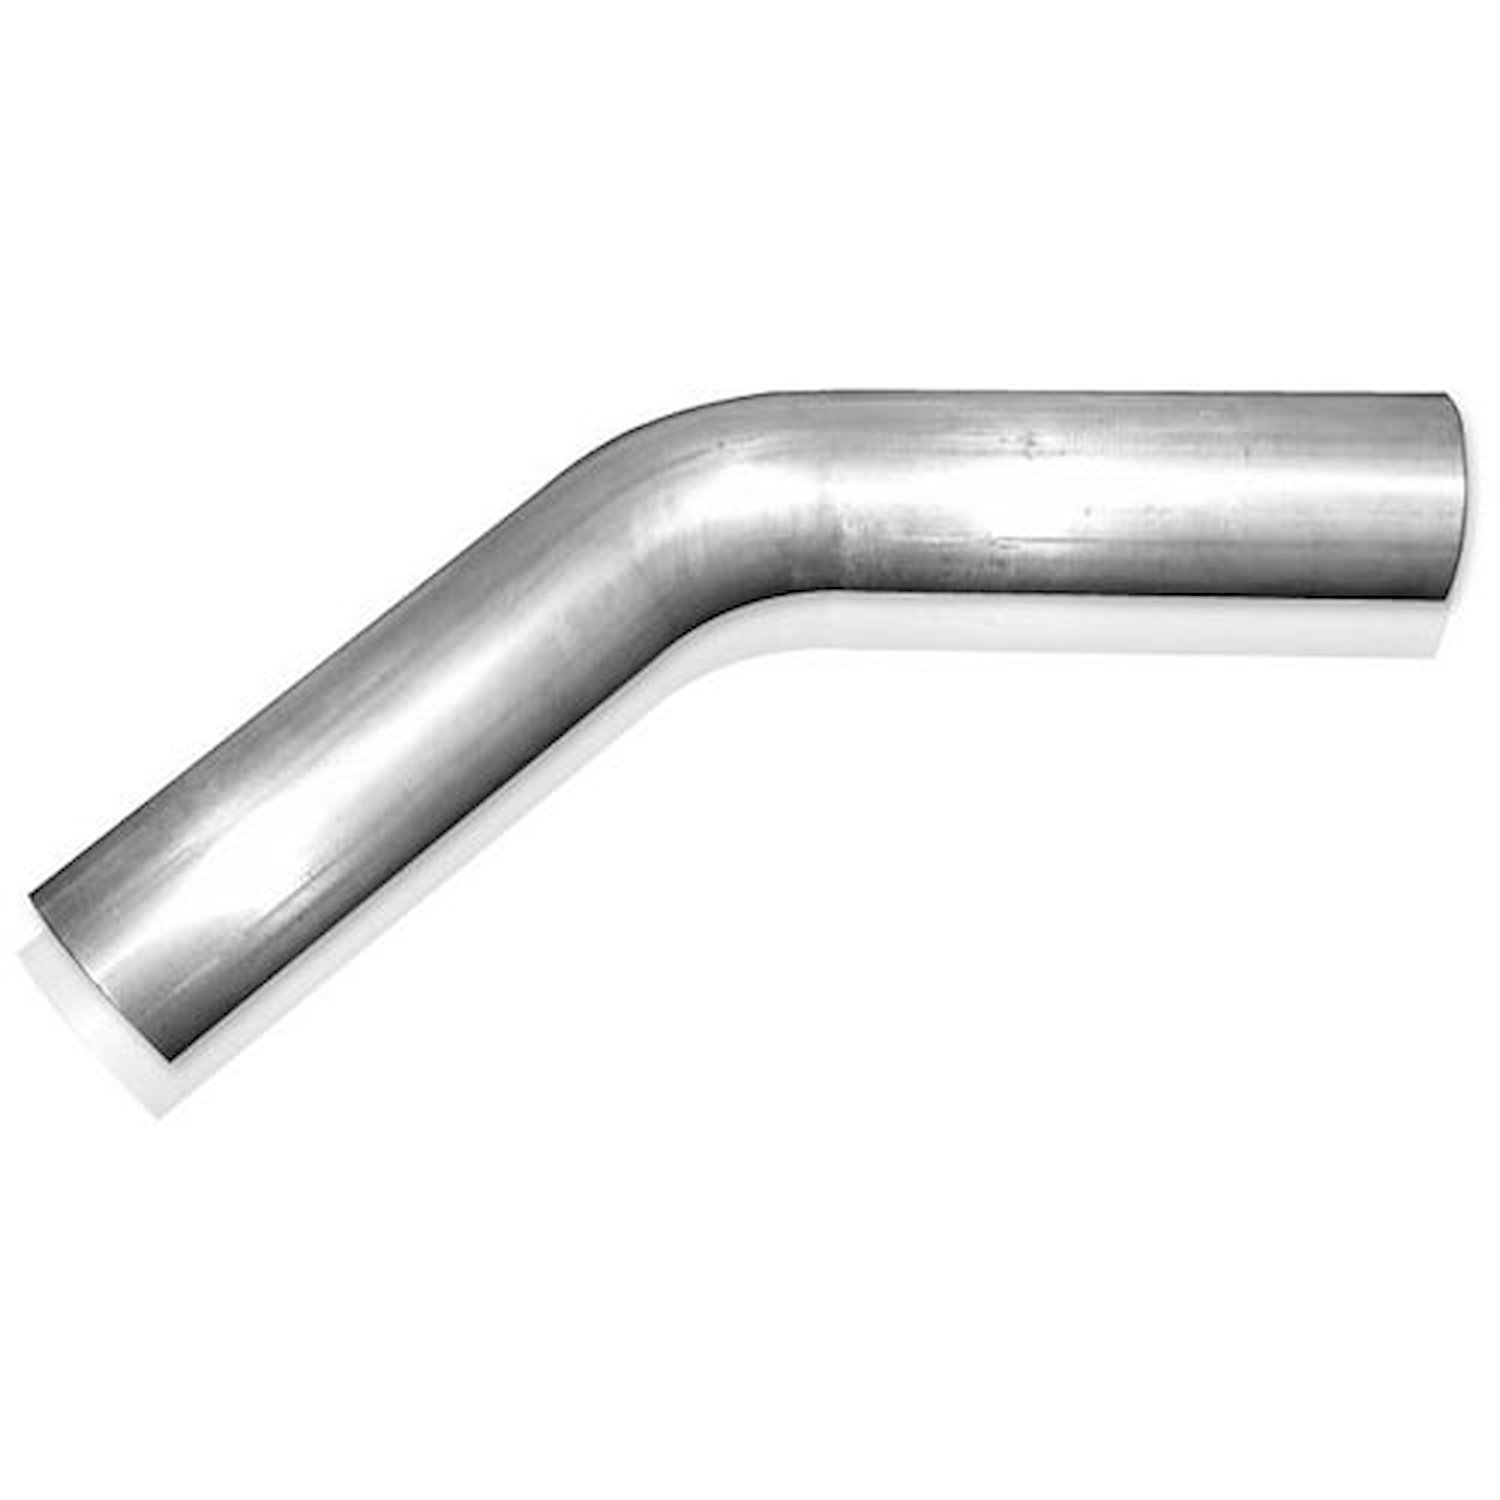 Stainless Steel 45° 3" Mandrel Bend